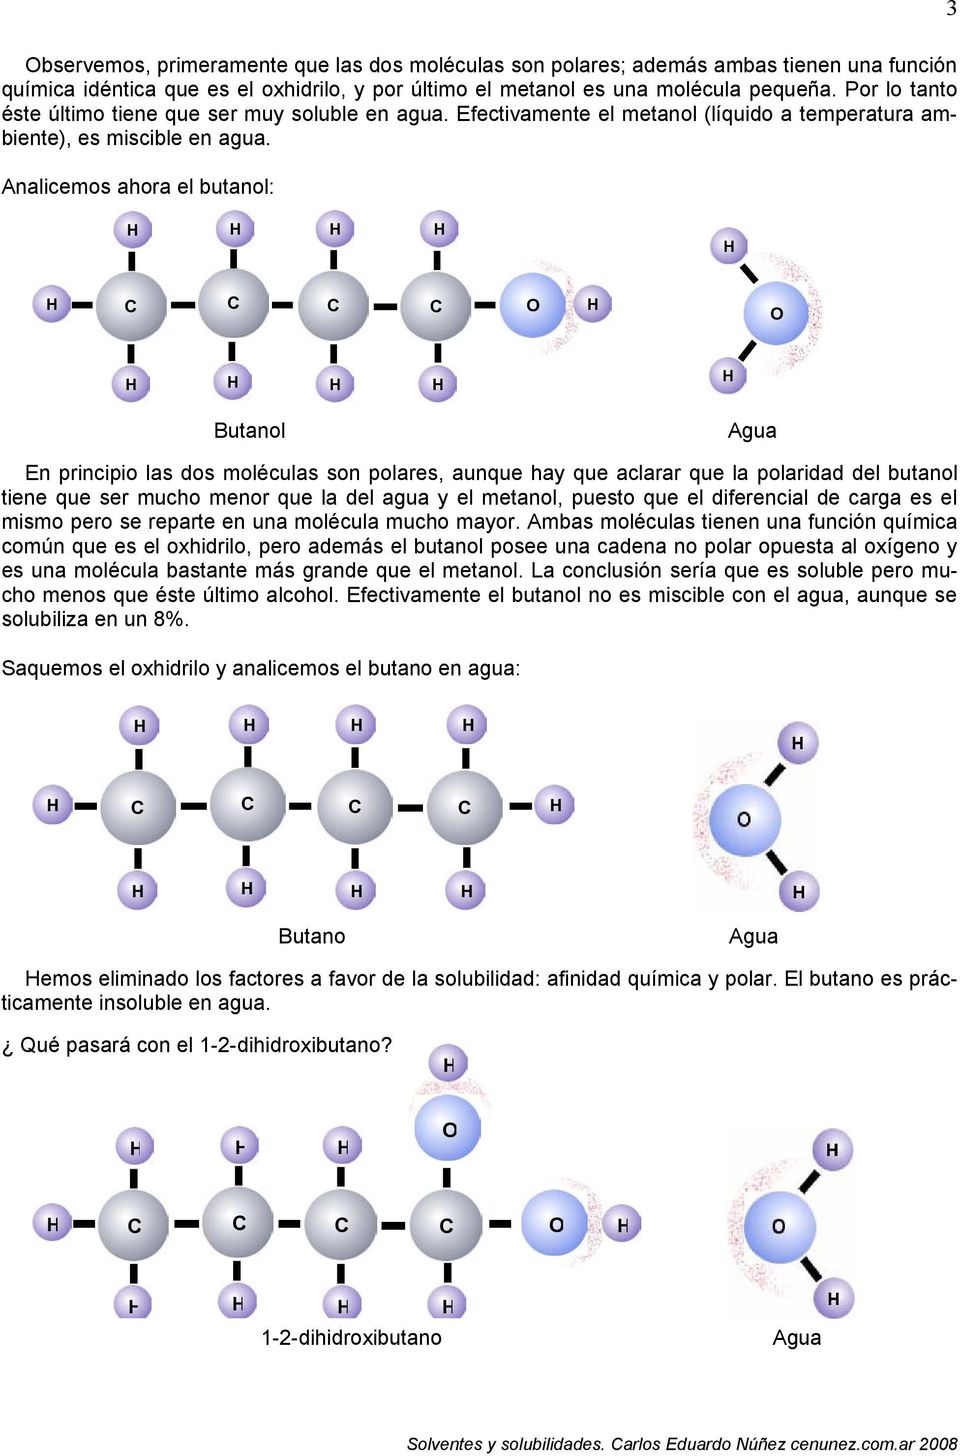 Analicemos ahora el butanol: Butanol En principio las dos moléculas son polares, aunque hay que aclarar que la polaridad del butanol tiene que ser mucho menor que la del agua y el metanol, puesto que